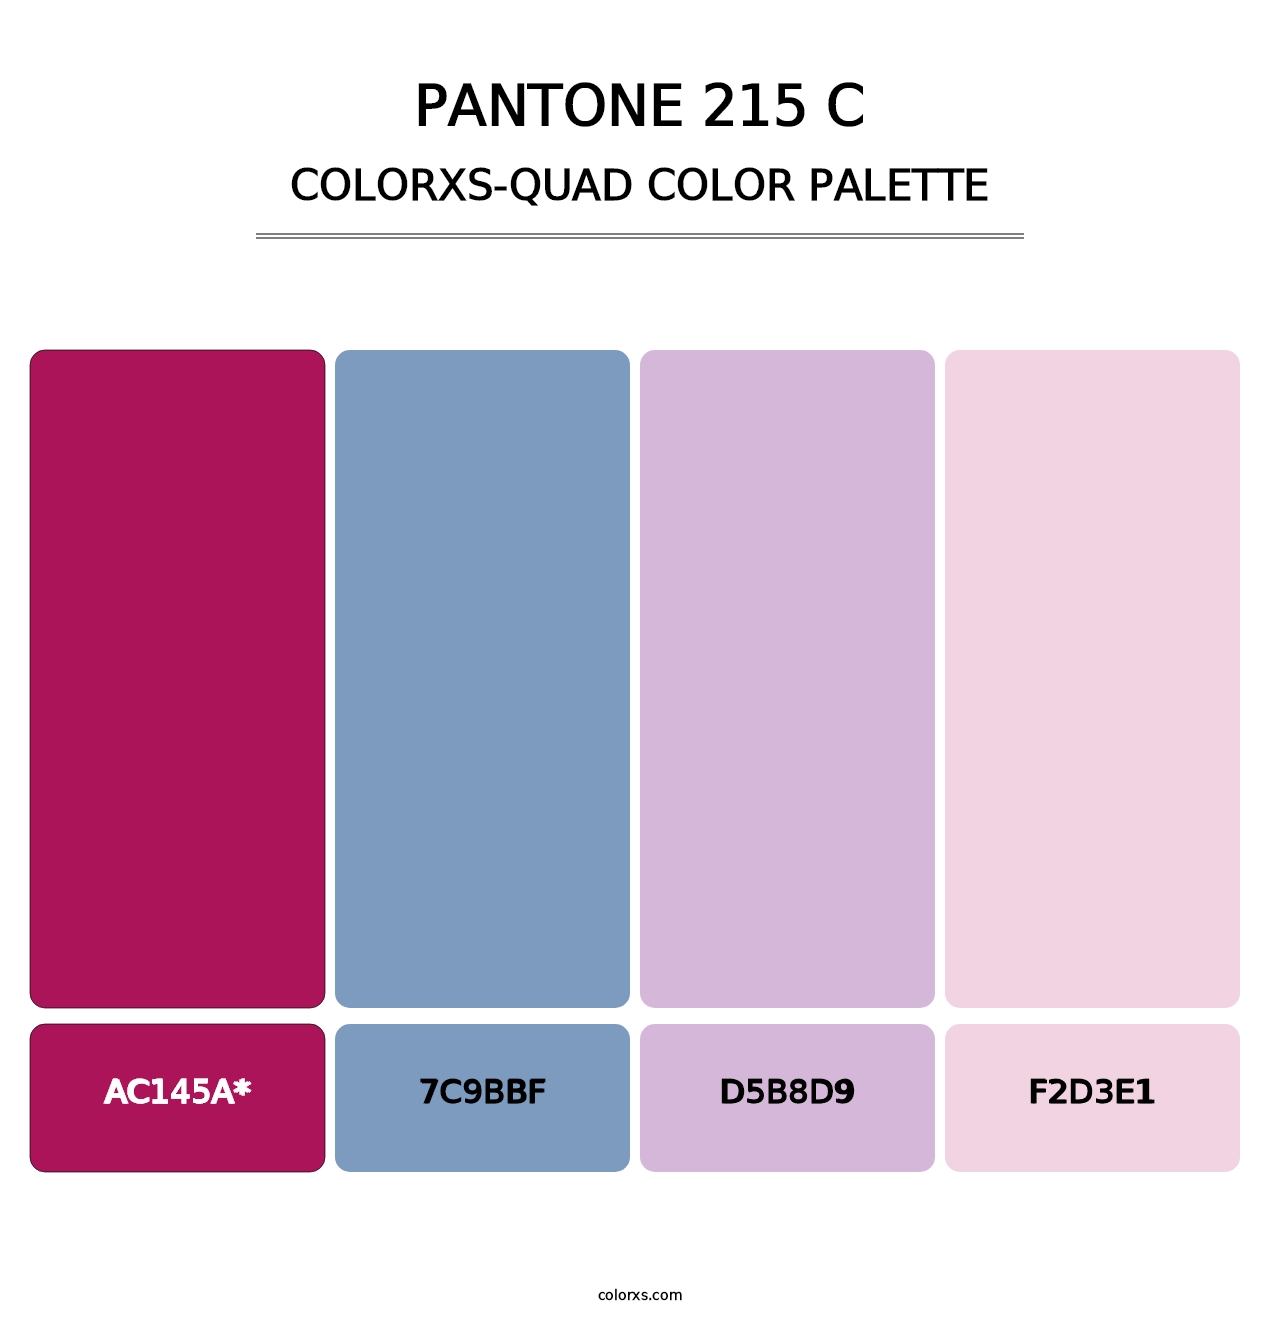 PANTONE 215 C - Colorxs Quad Palette